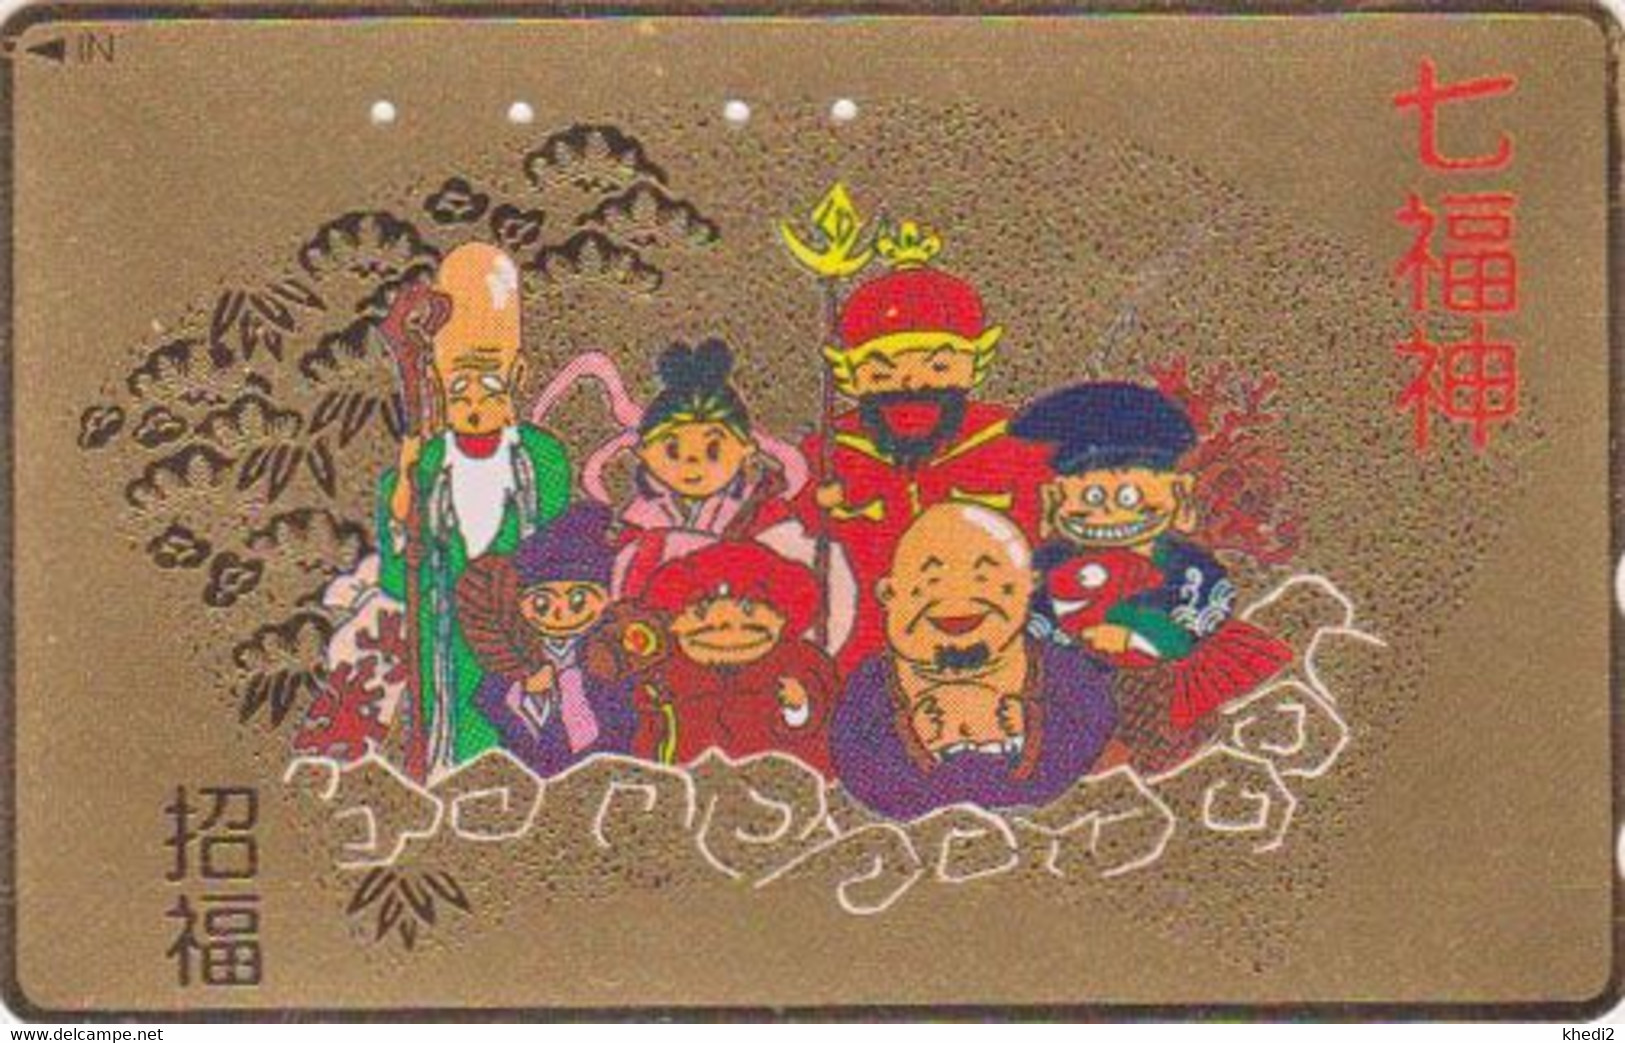 TC DOREE JAPON / 110-011 - Culture RELIGION - 7 DIEUX DU BONHEUR - LUCK GODS JAPAN GOLD Phonecard - 325 - Cultura